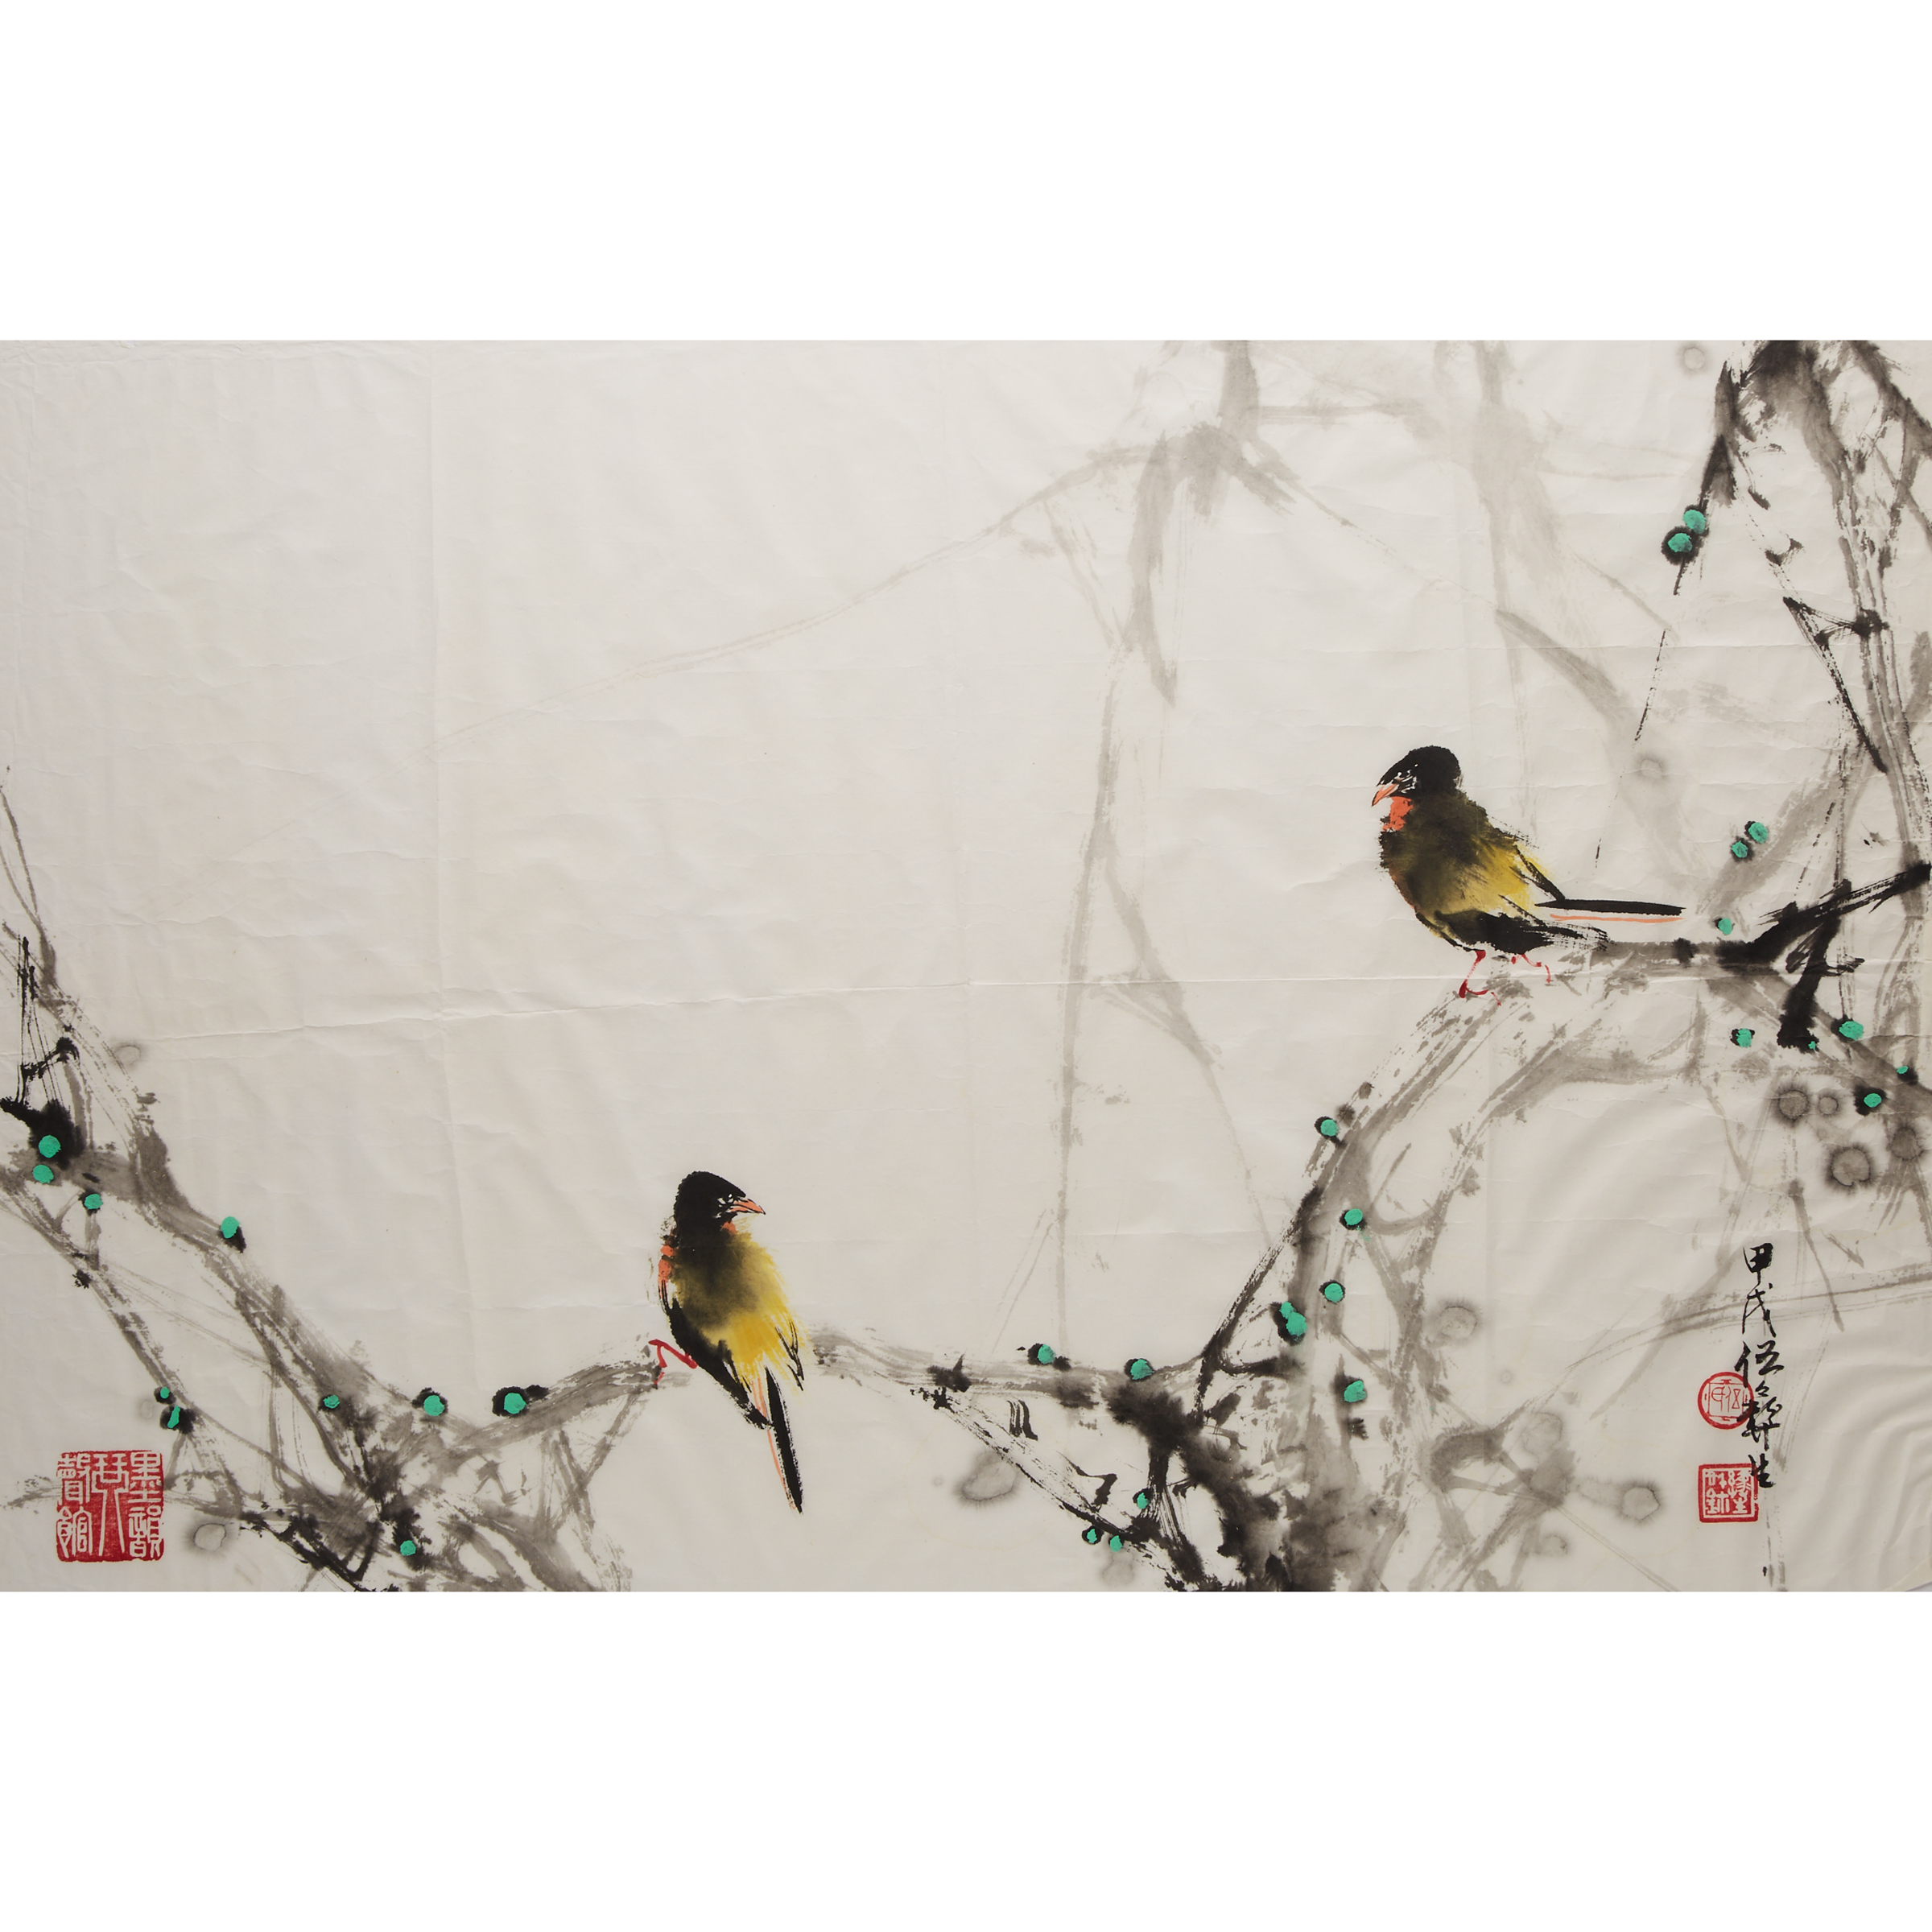 Wu Yisheng (1929-2009), Two Paintings